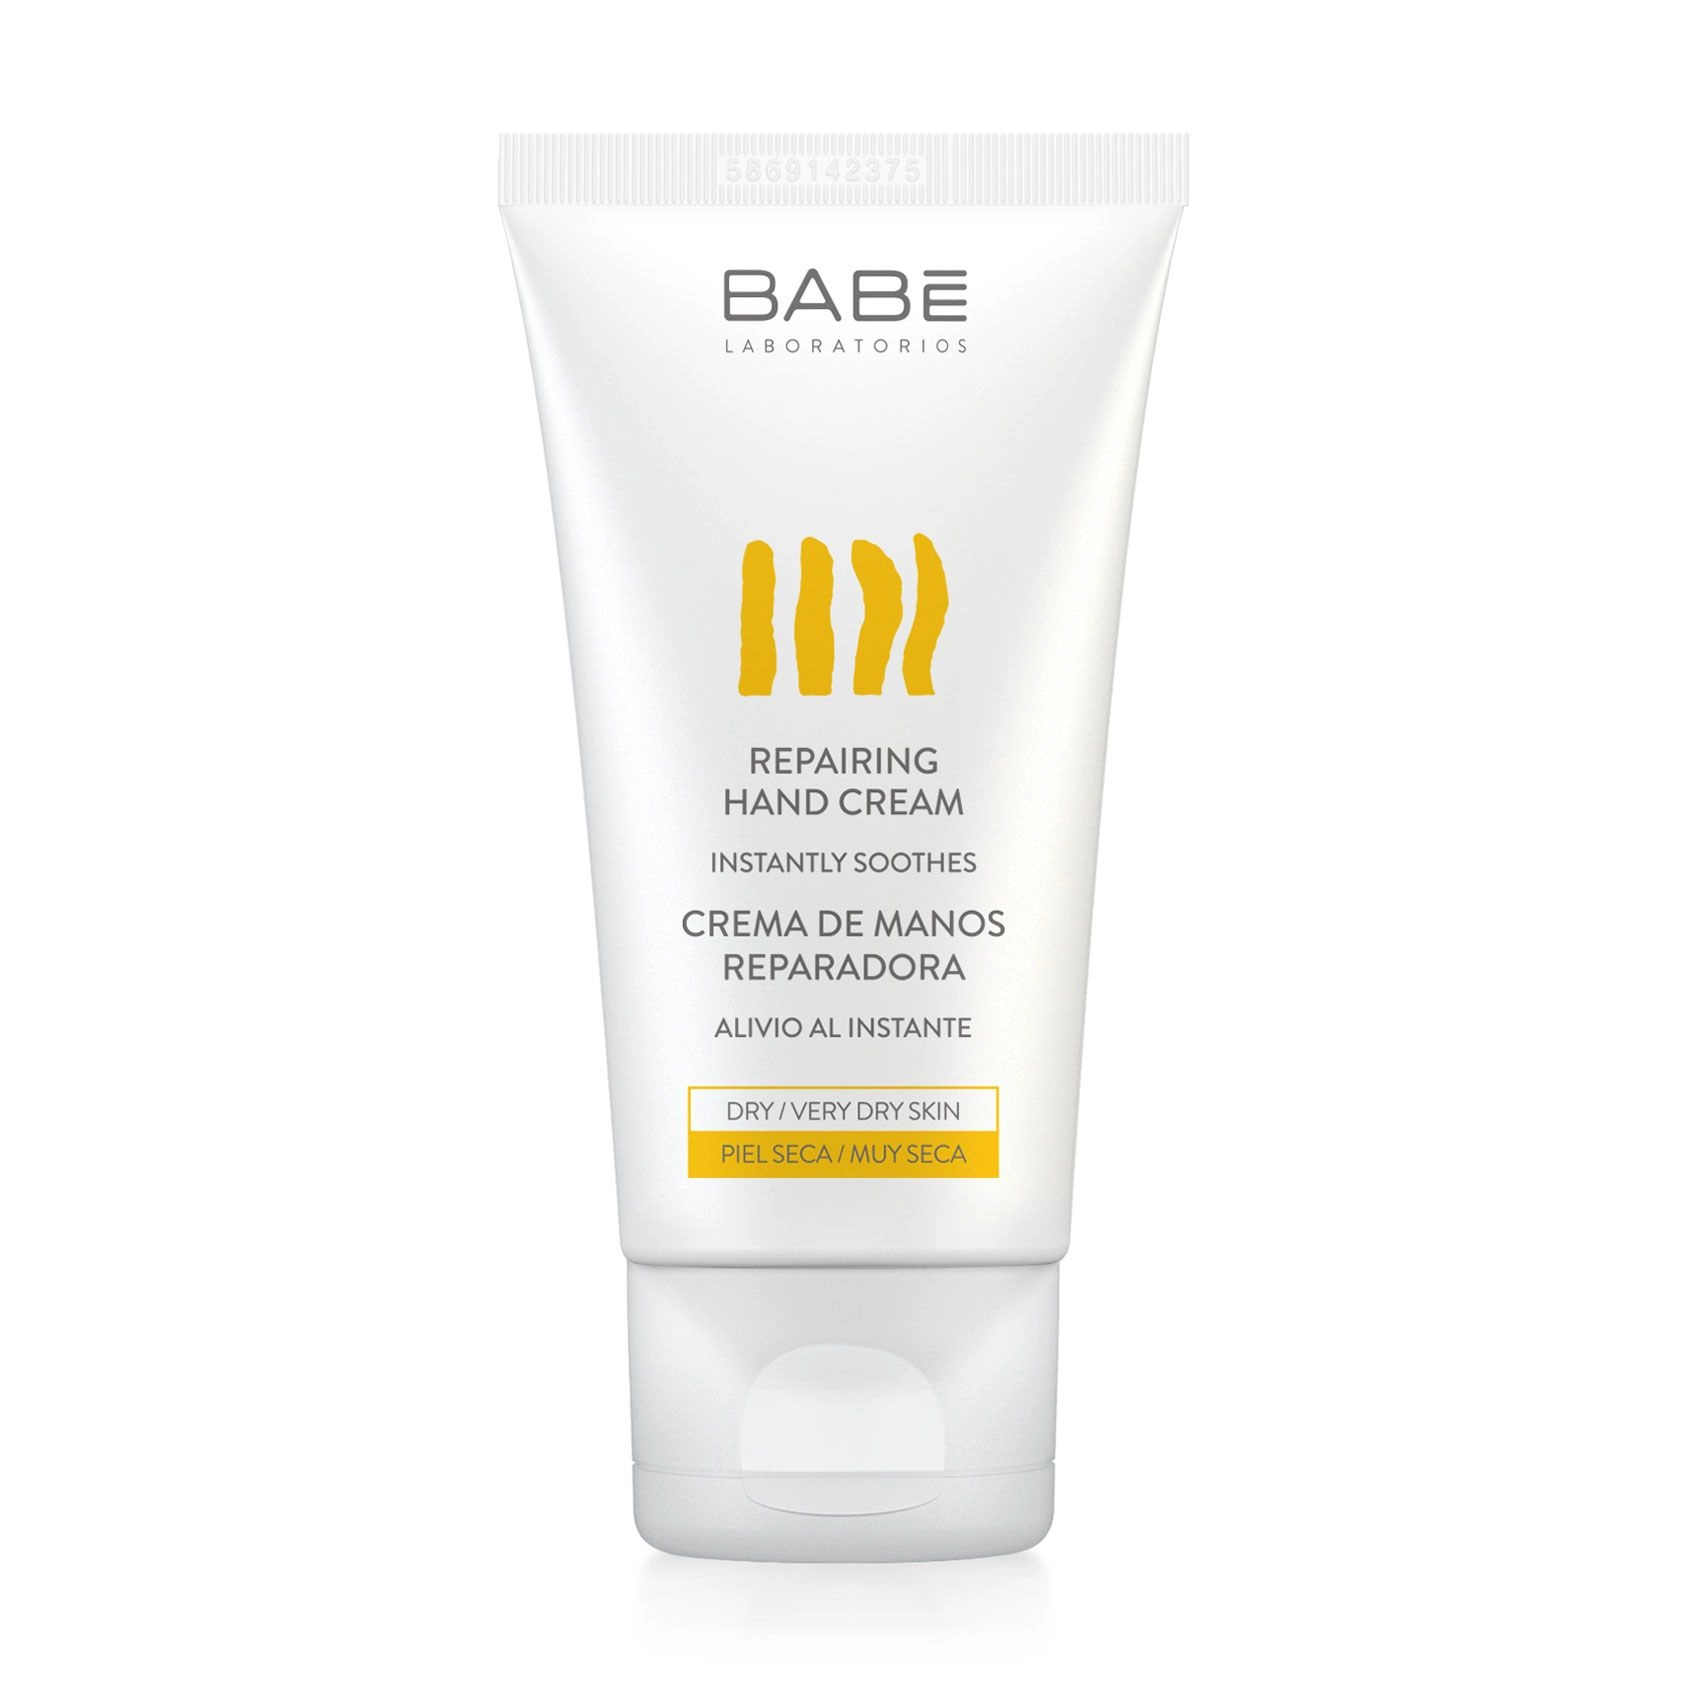 Восстанавливающий крем для рук для сухой и потрескавшейся кожи - BABE Laboratorios Hand Cream, 50 мл - фото N3